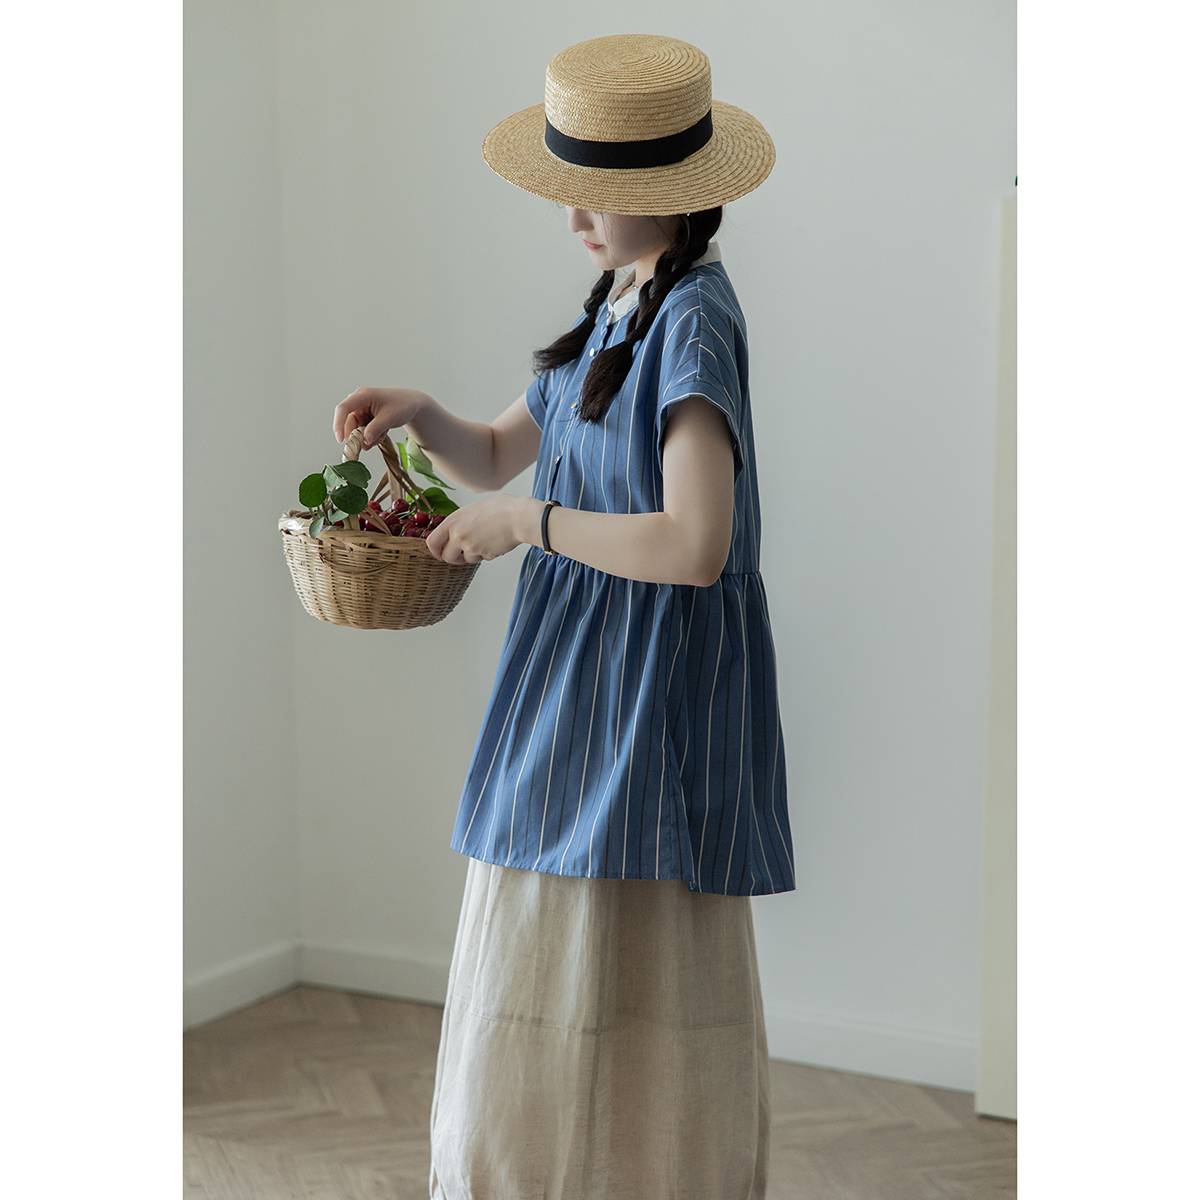 日本小众设计夏季短袖氧气少女感娃娃上衣法式复古竖条纹衬衫女